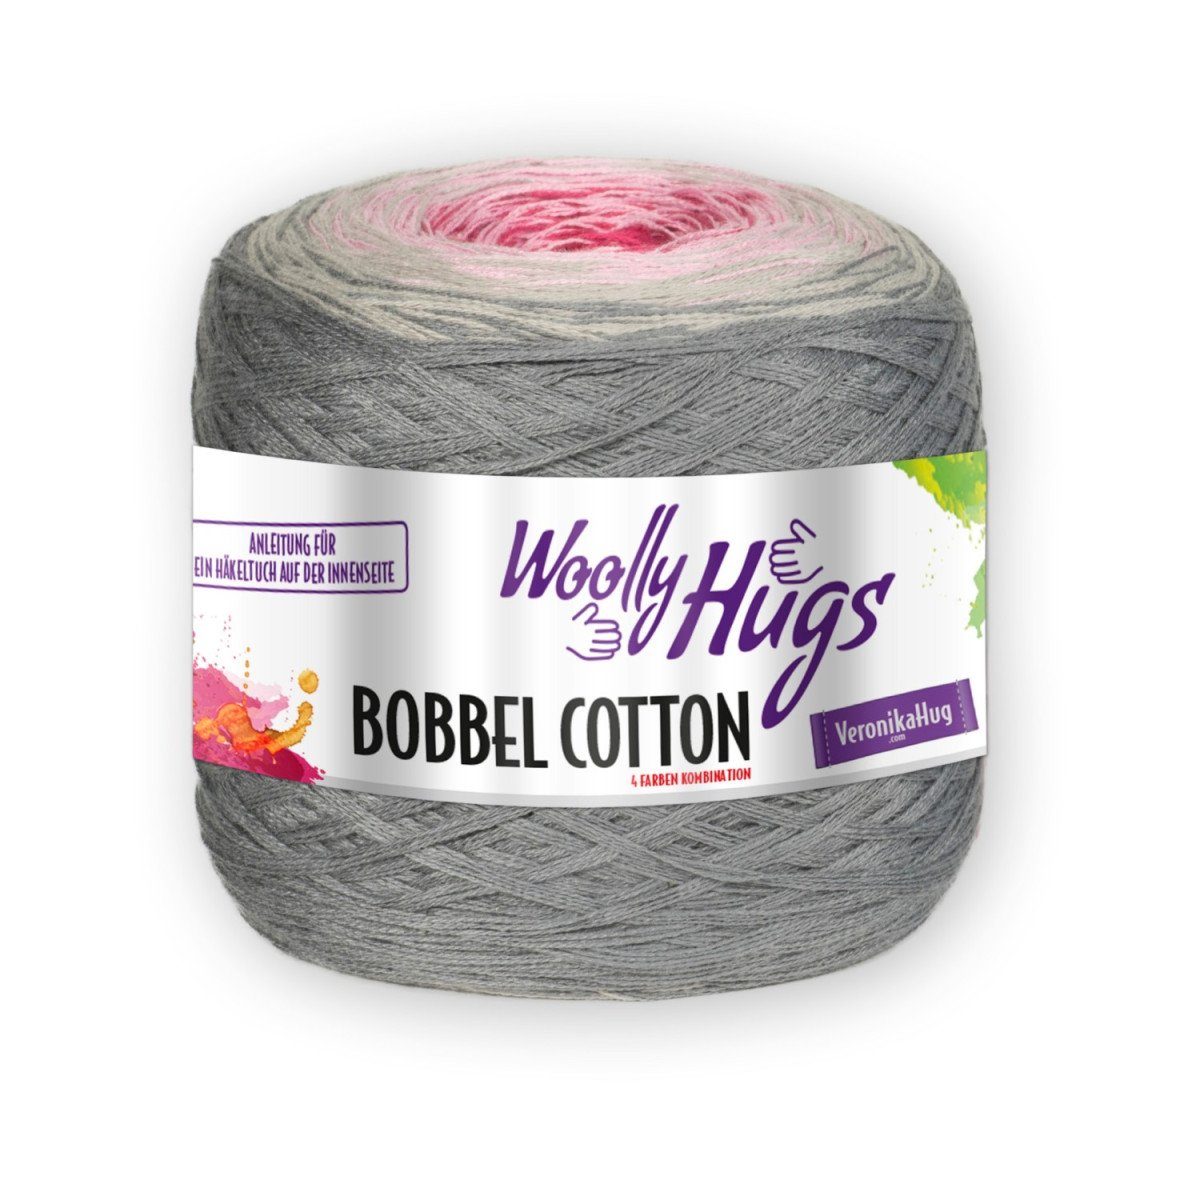 Woolly Hugs Bobbel Cotton 200g Farbverlaufsgarn zum Stricken und Häkeln Häkelwolle, 800,00 m (Baumwollgarn mit Farbverlauf, Bobbelwolle, Bobble Wolle Cake), Farbverlaufswolle